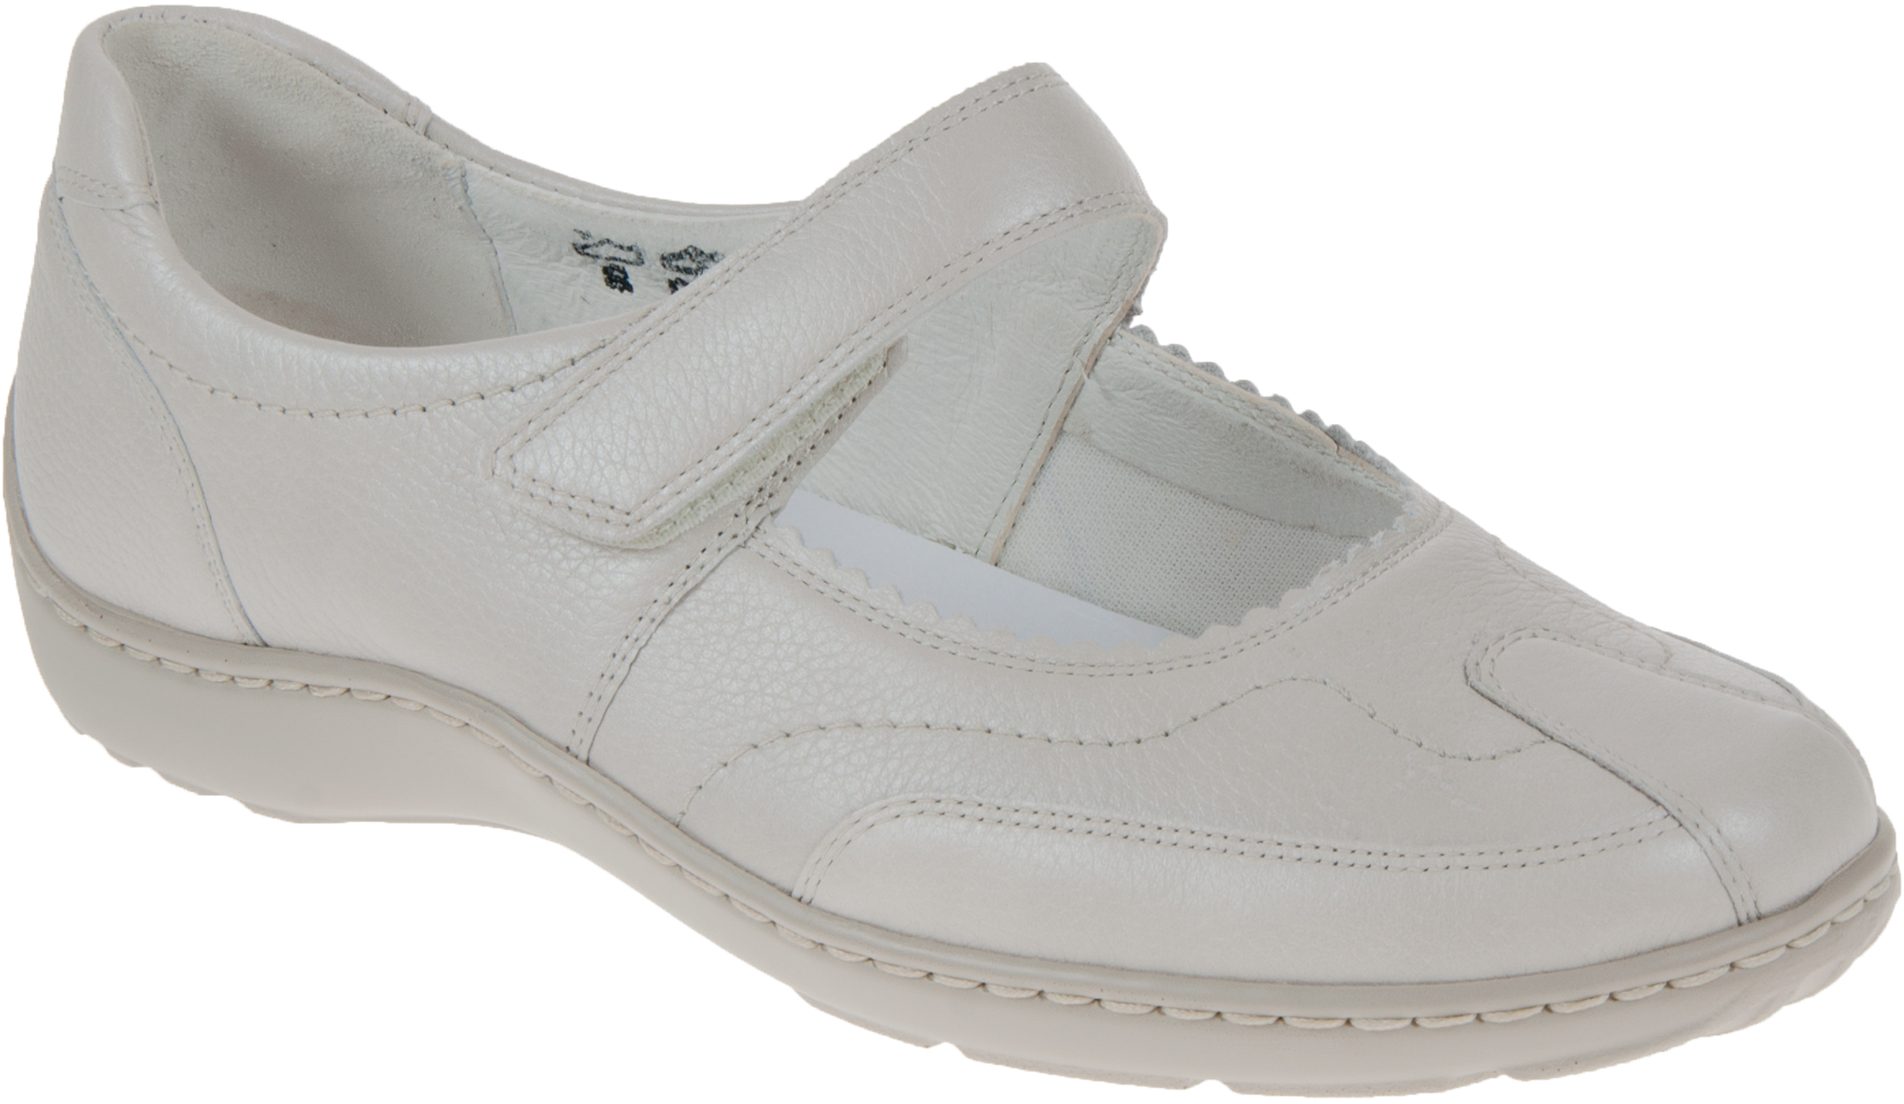 Waldlaufer Henni 302 Off White Leather 496302 172 120 - Ballerina Shoes ...